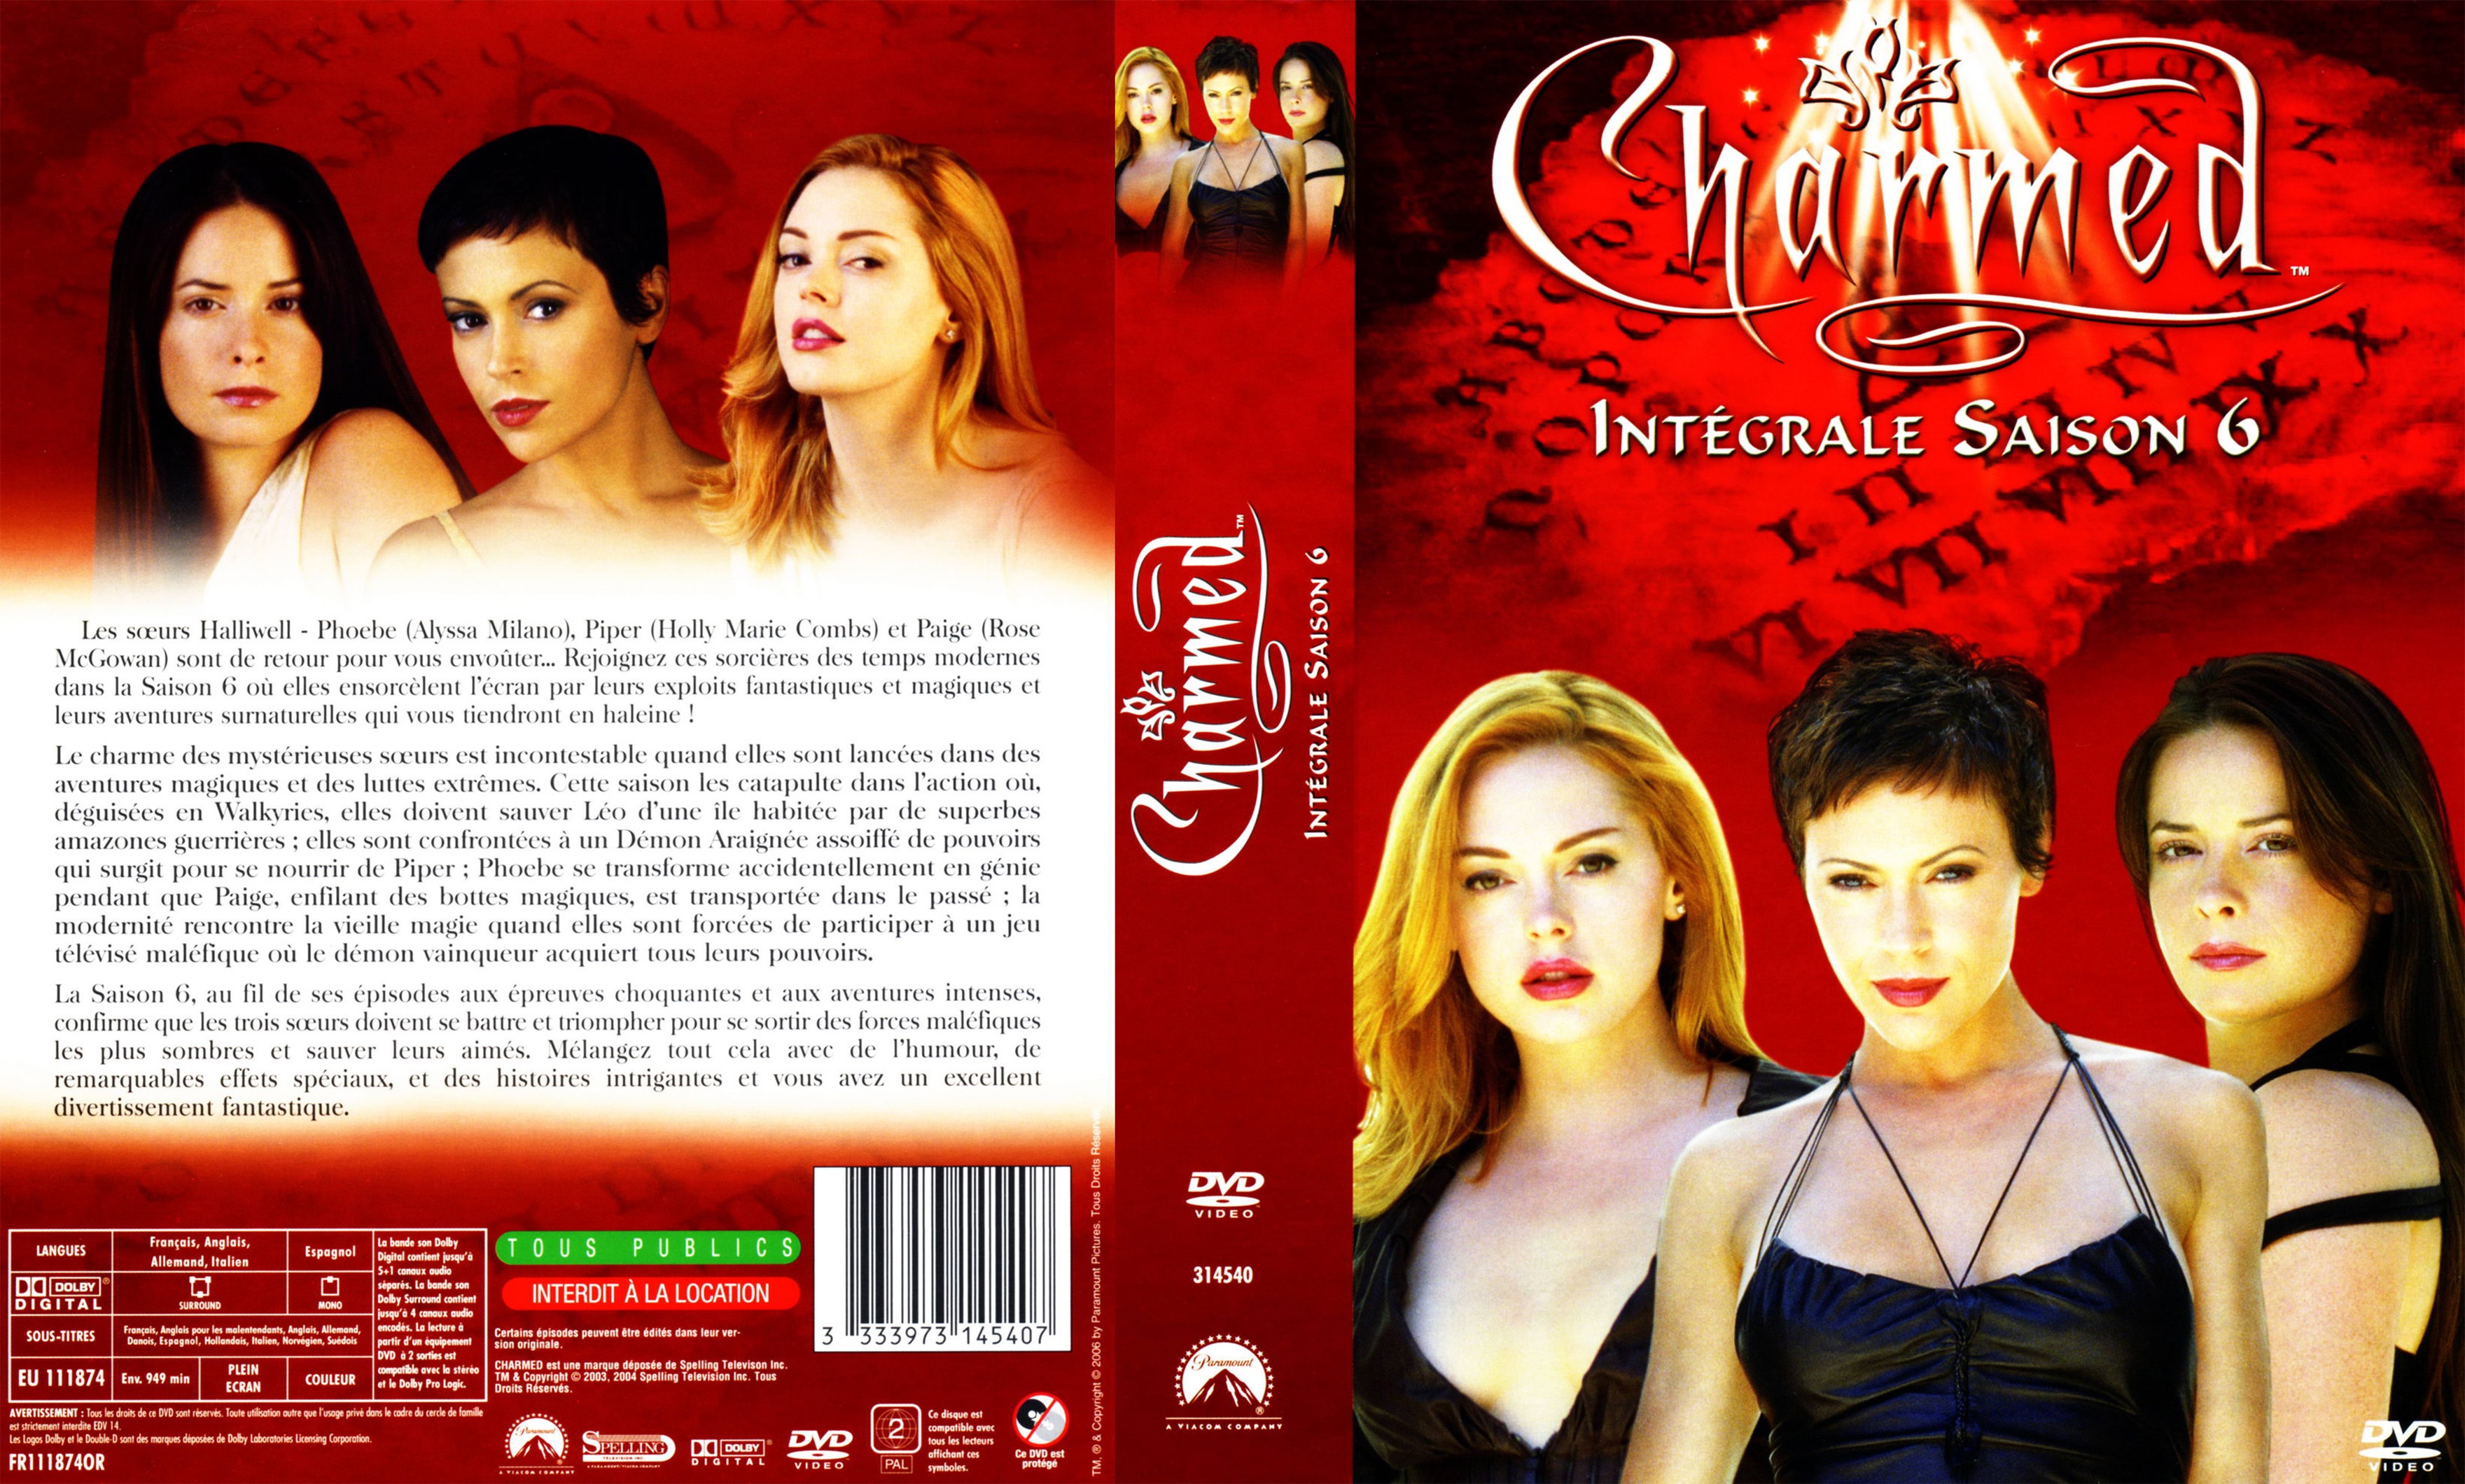 Jaquette DVD Charmed Saison 6 COFFRET v2